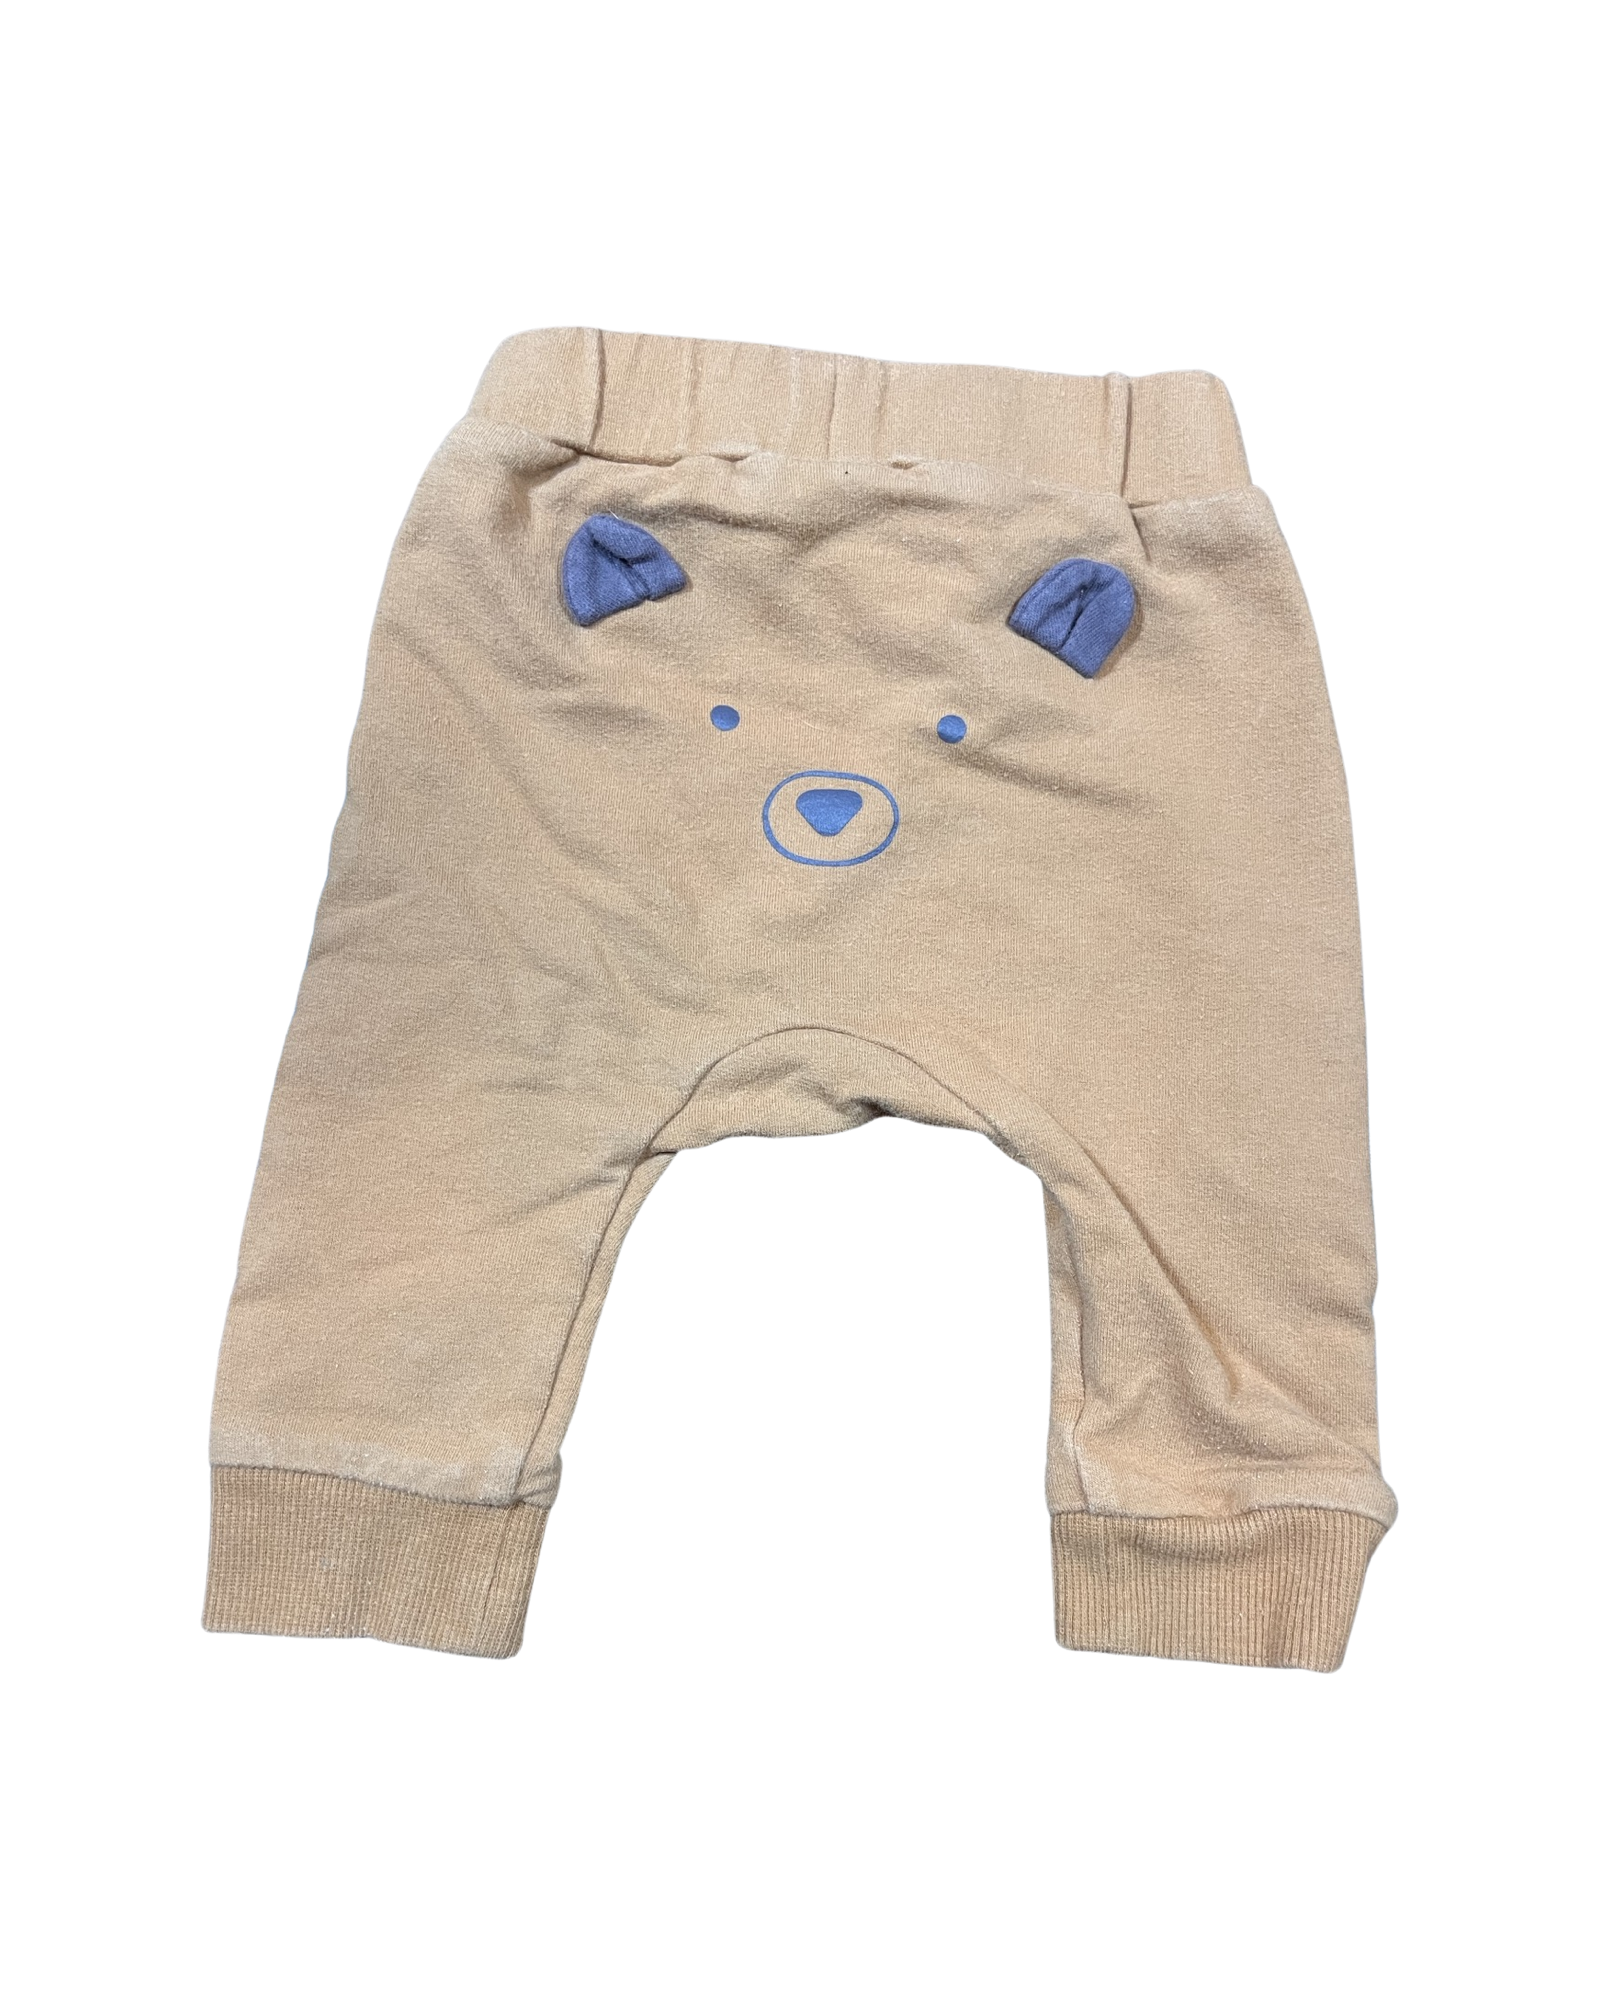 H&M Bear Bum Brown Pants (2-4M)